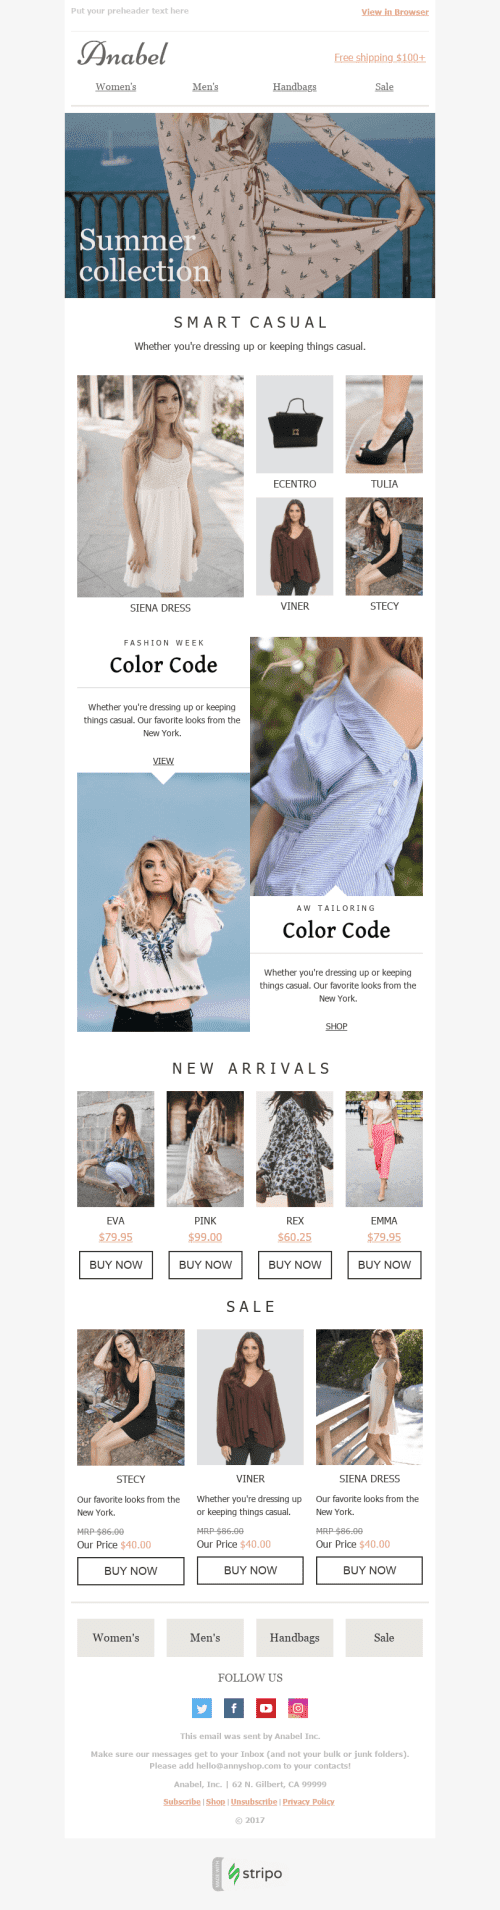 Промо шаблон листа "Яскраві кольори" для індустрії "Мода" mobile view